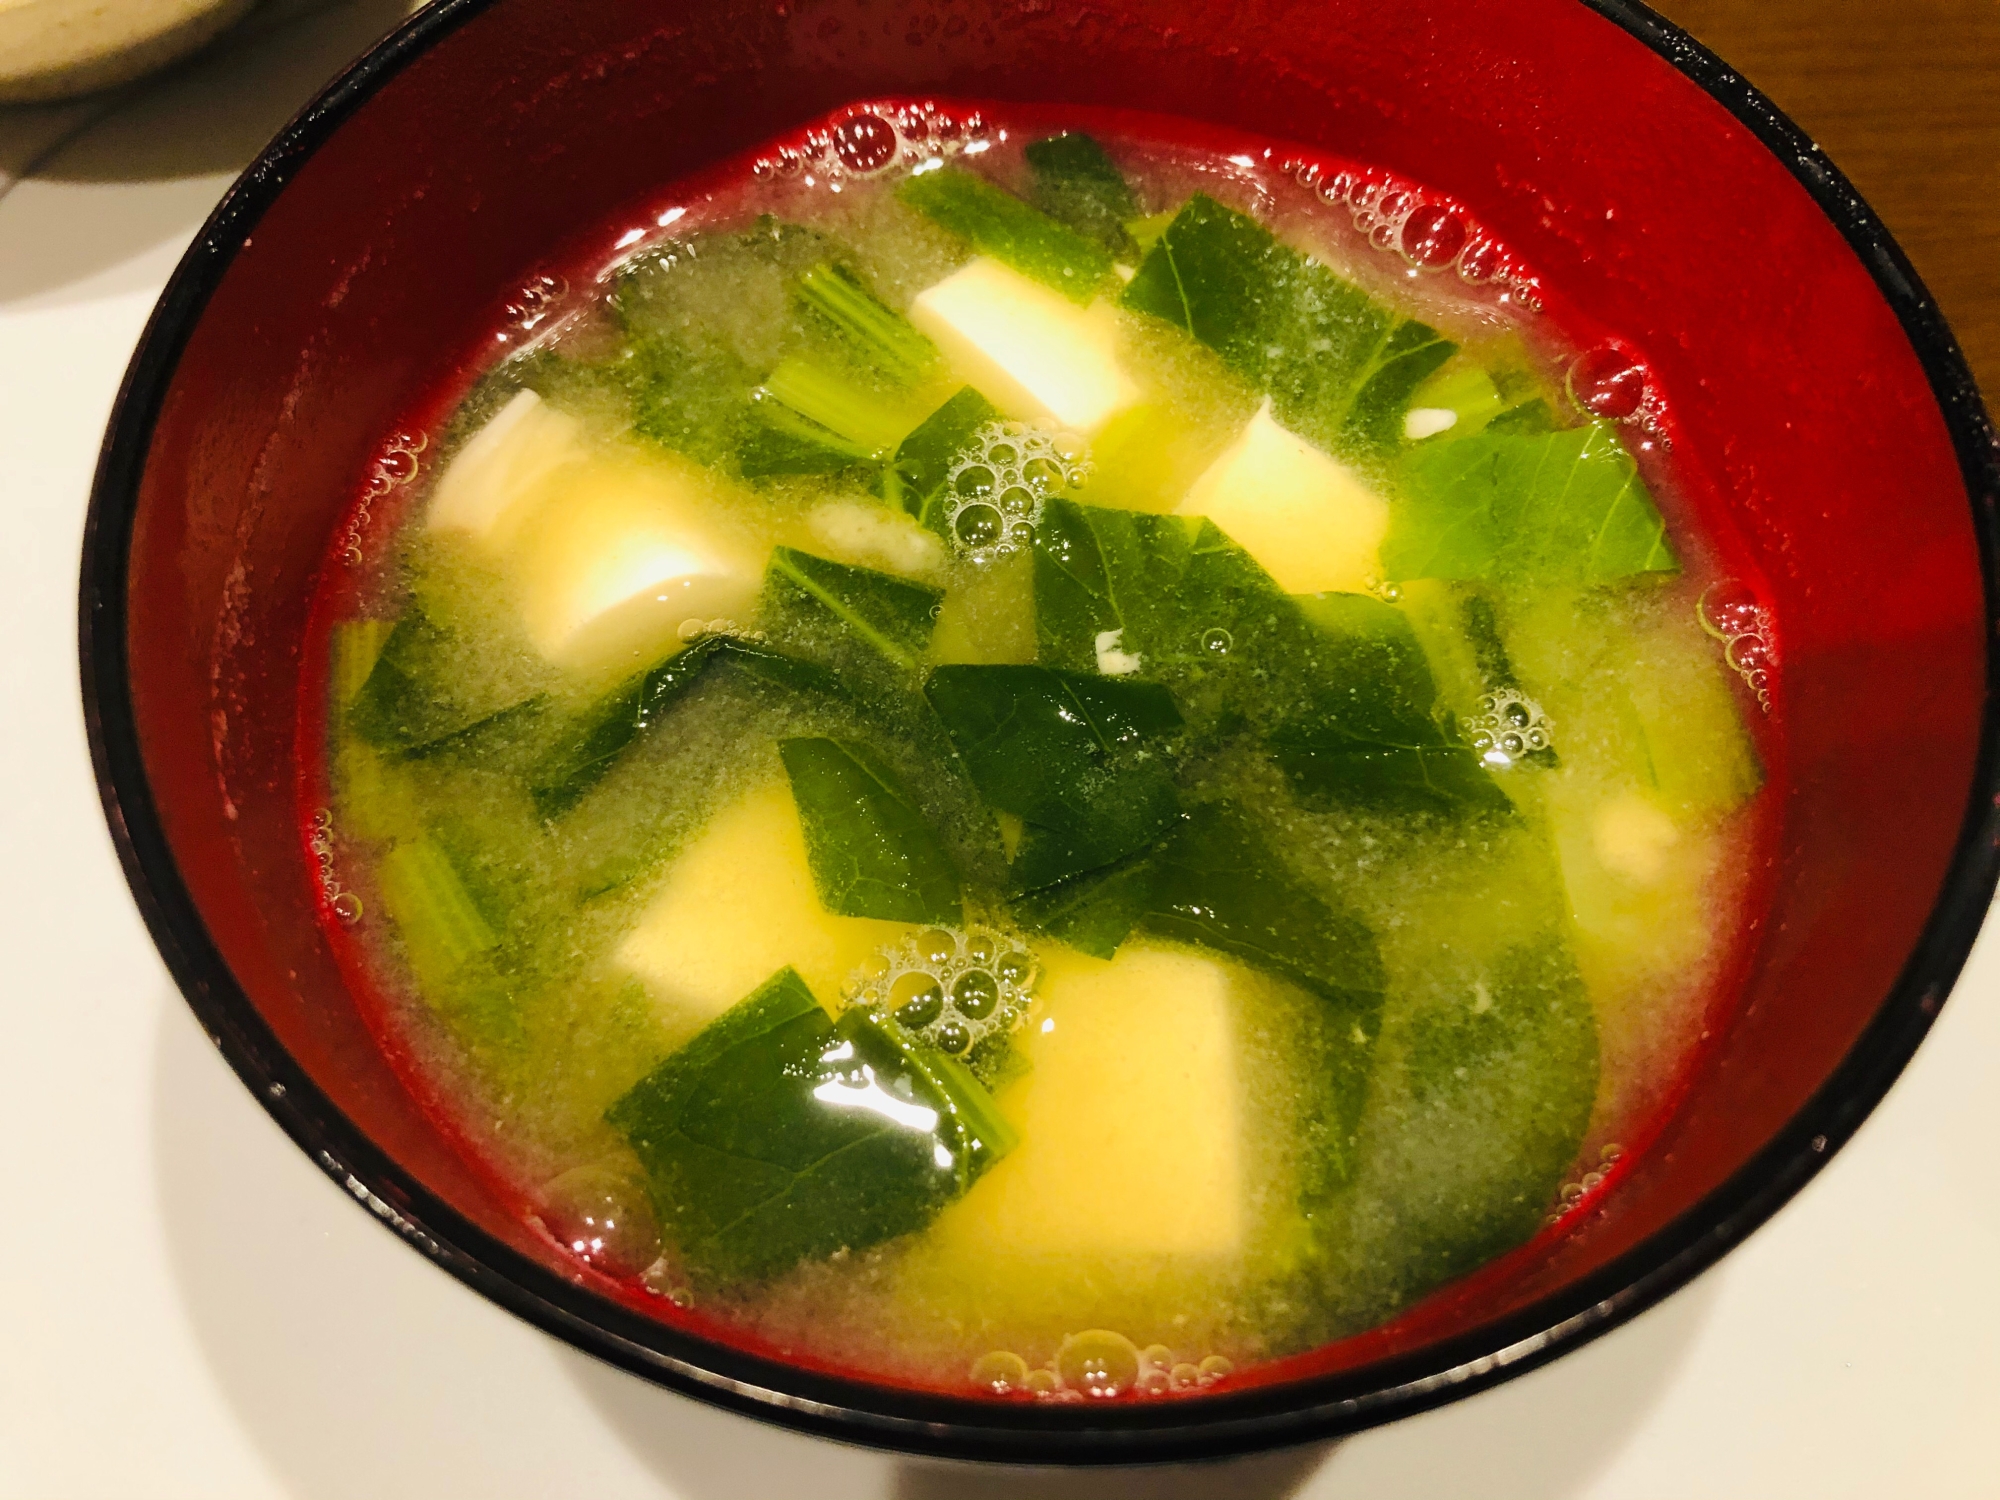 小松菜、えのき、豆腐の味噌汁